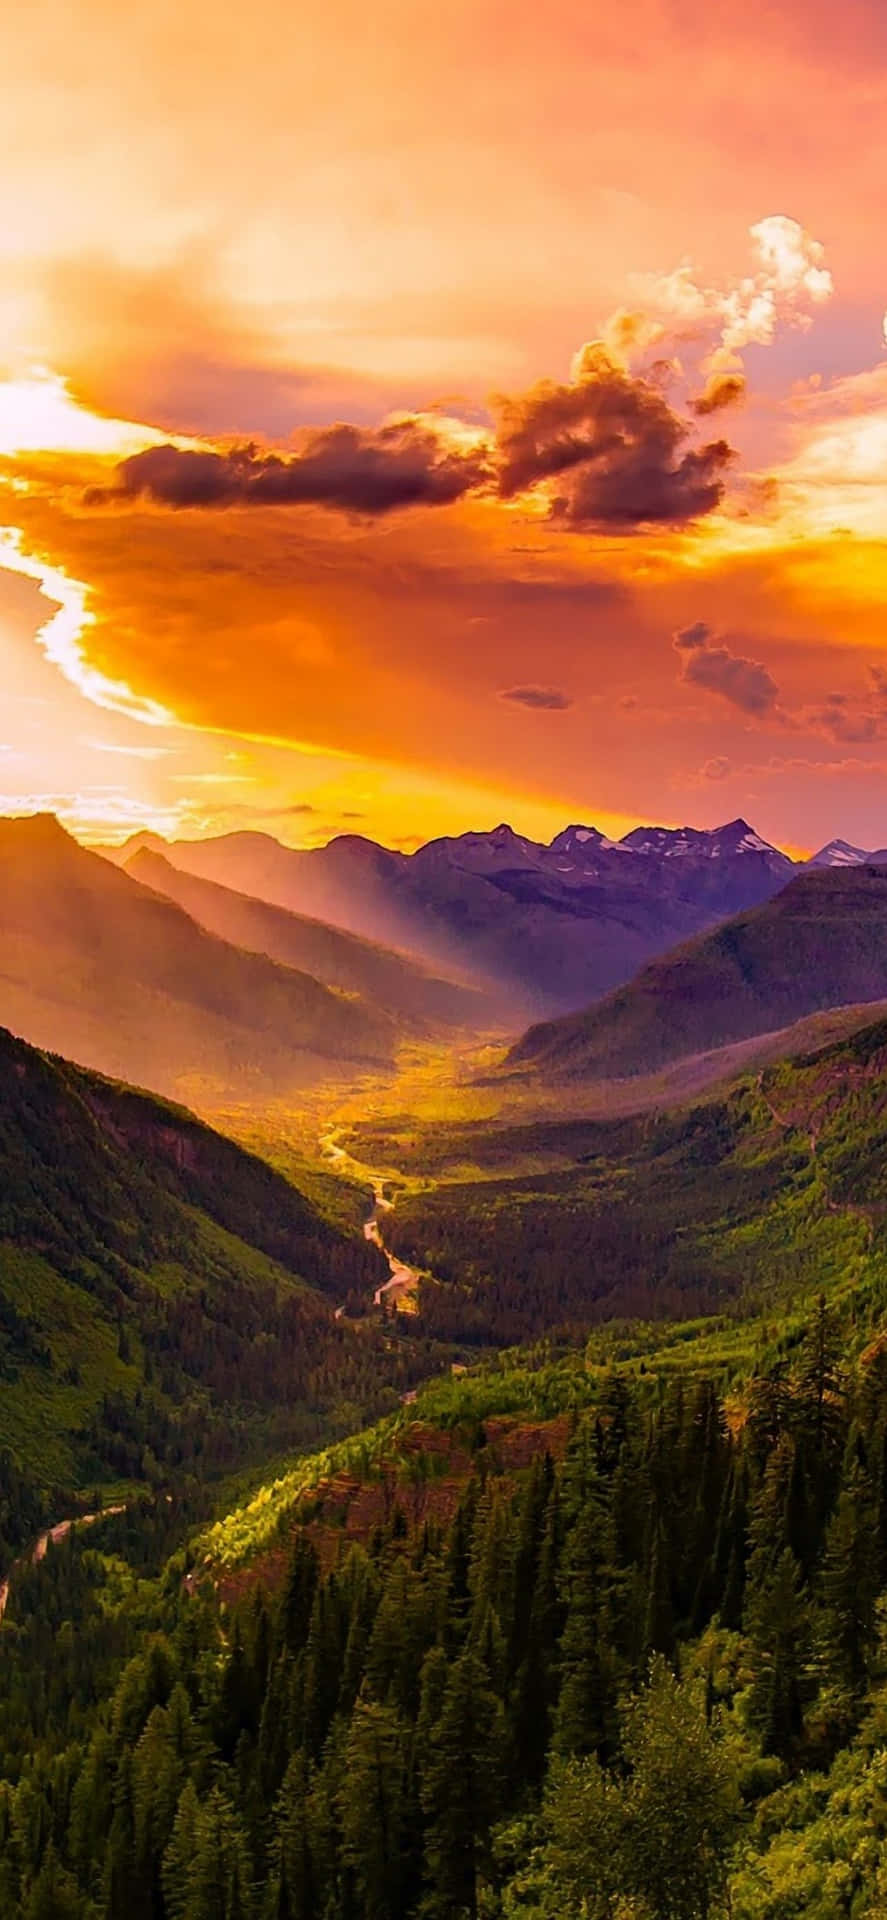 Caption: Majestic Mountain Landscape on iPhone Background